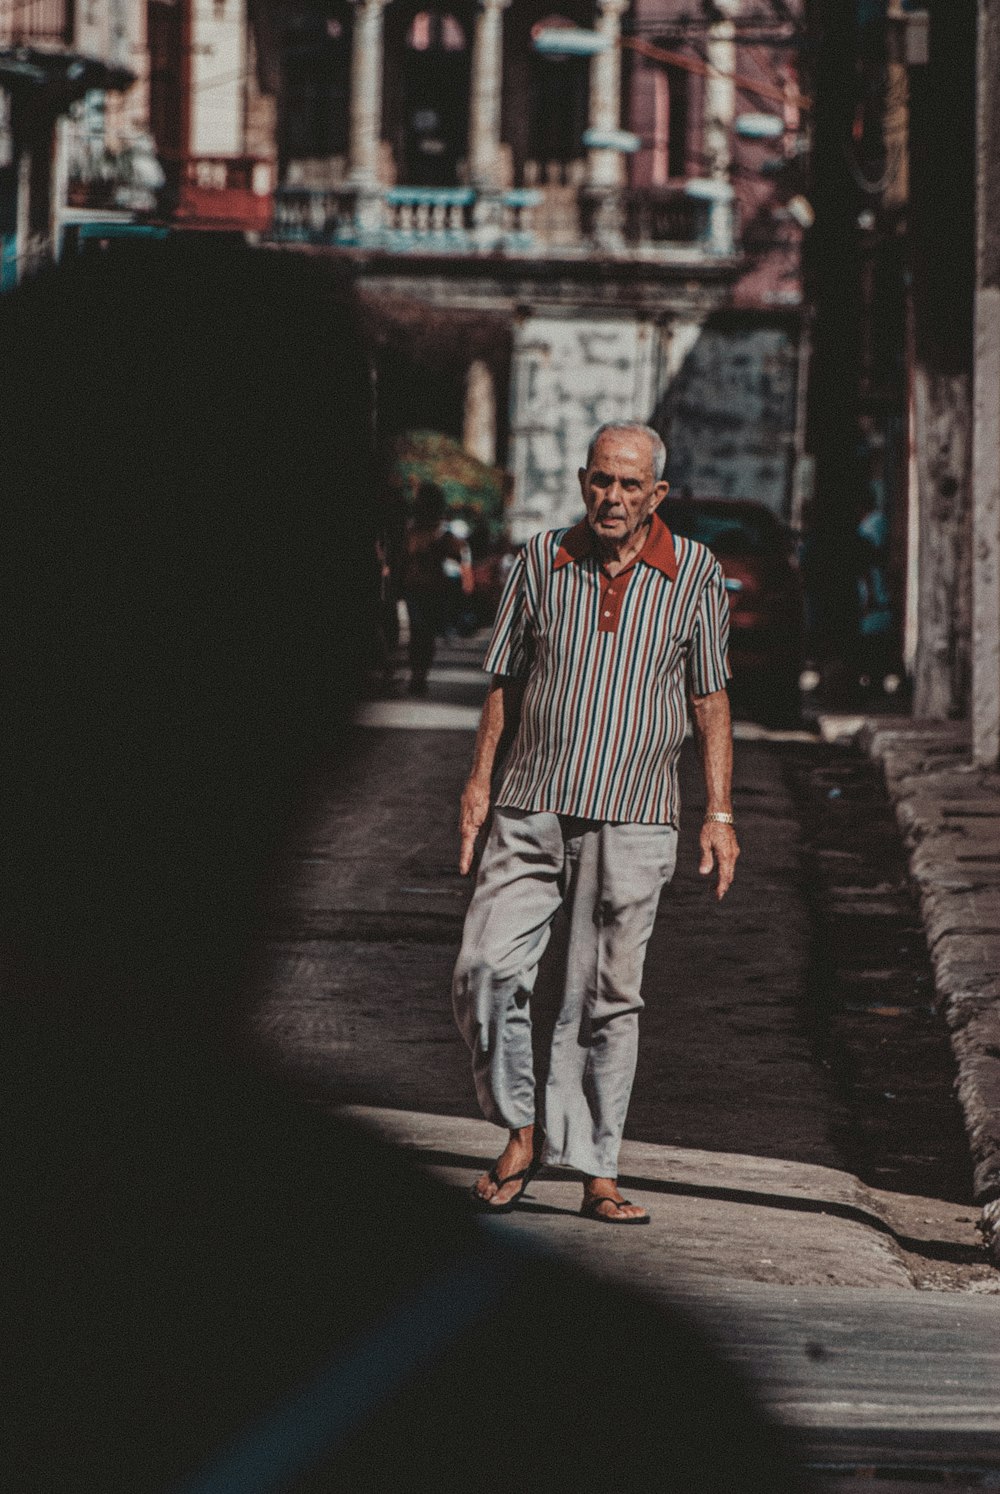 Uomo in camicia a righe bianche e rosse e pantaloni grigi in piedi sul  sentiero di cemento grigio durante foto – Grigio Immagine gratuita su  Unsplash